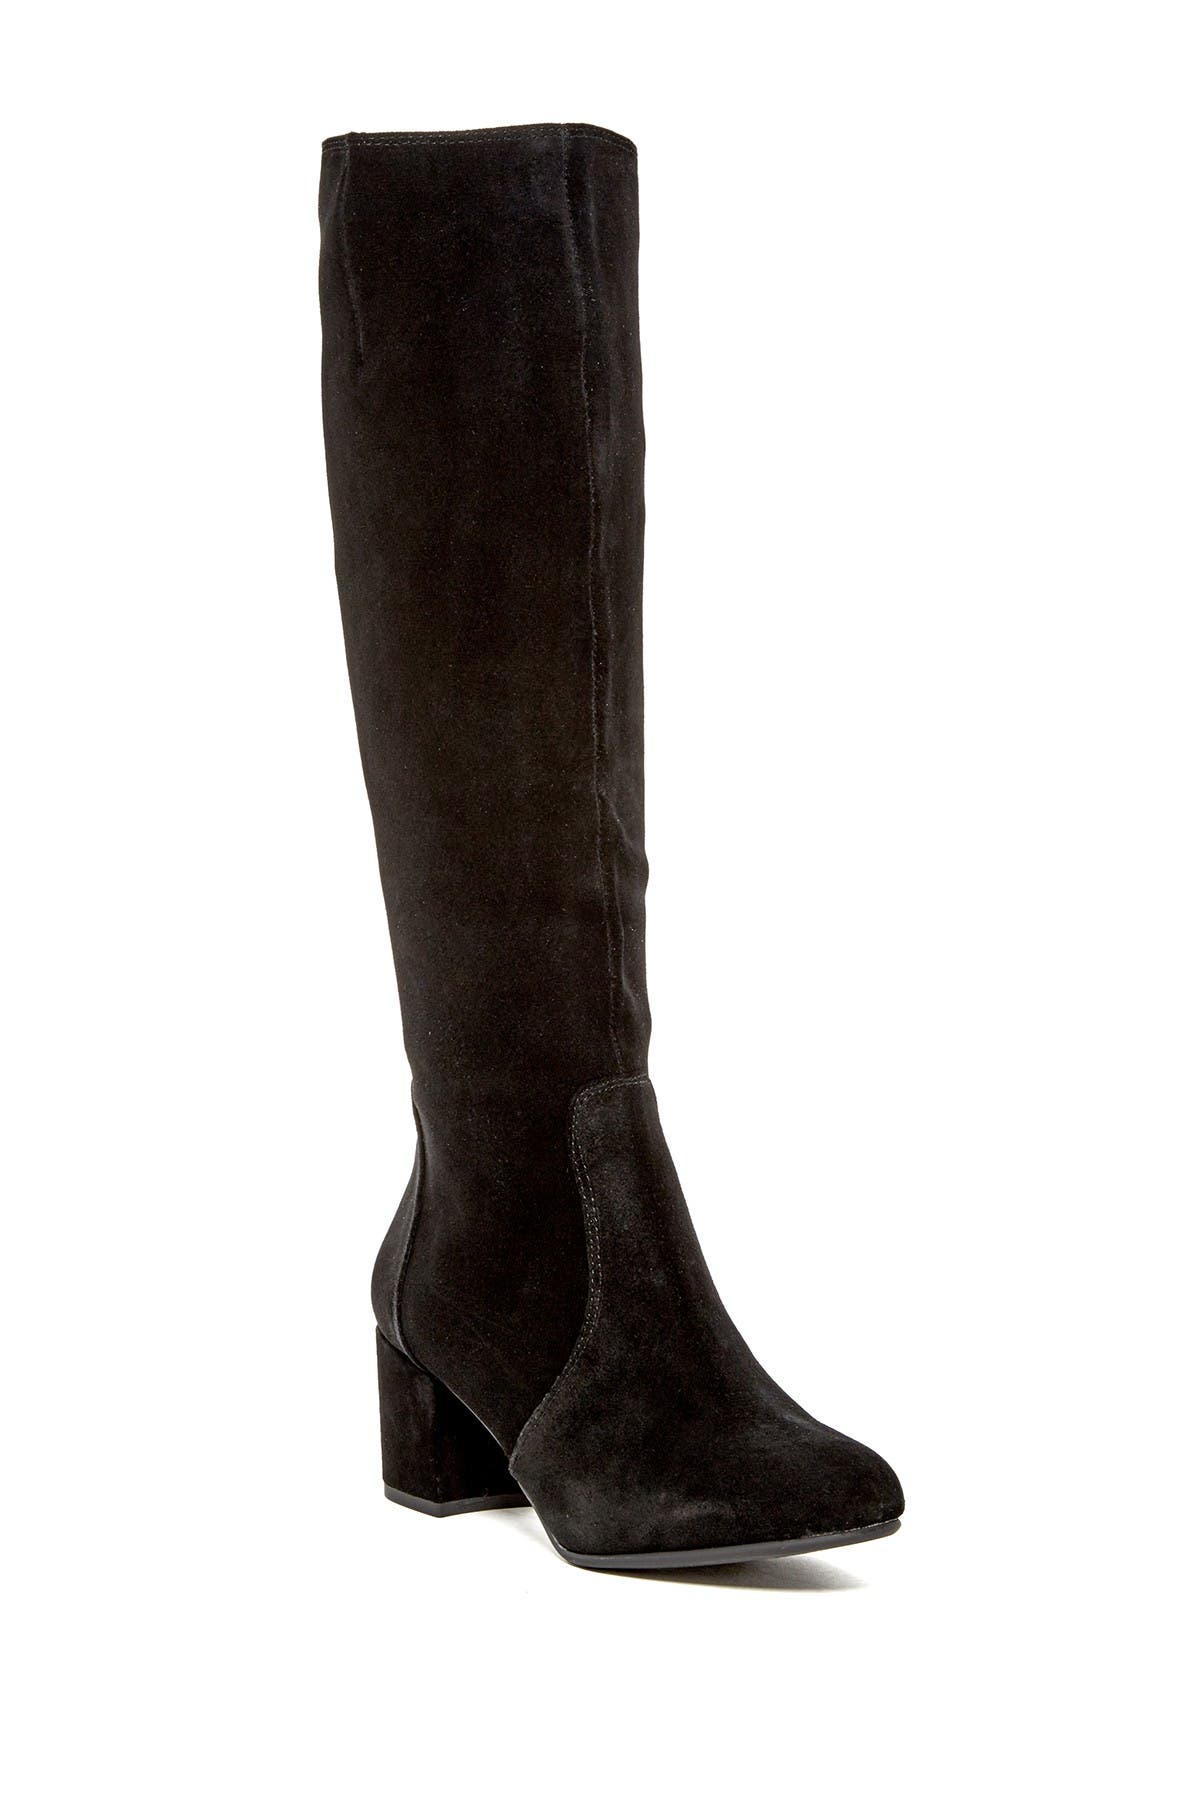 Steve Madden | Haydun Knee High Boot 